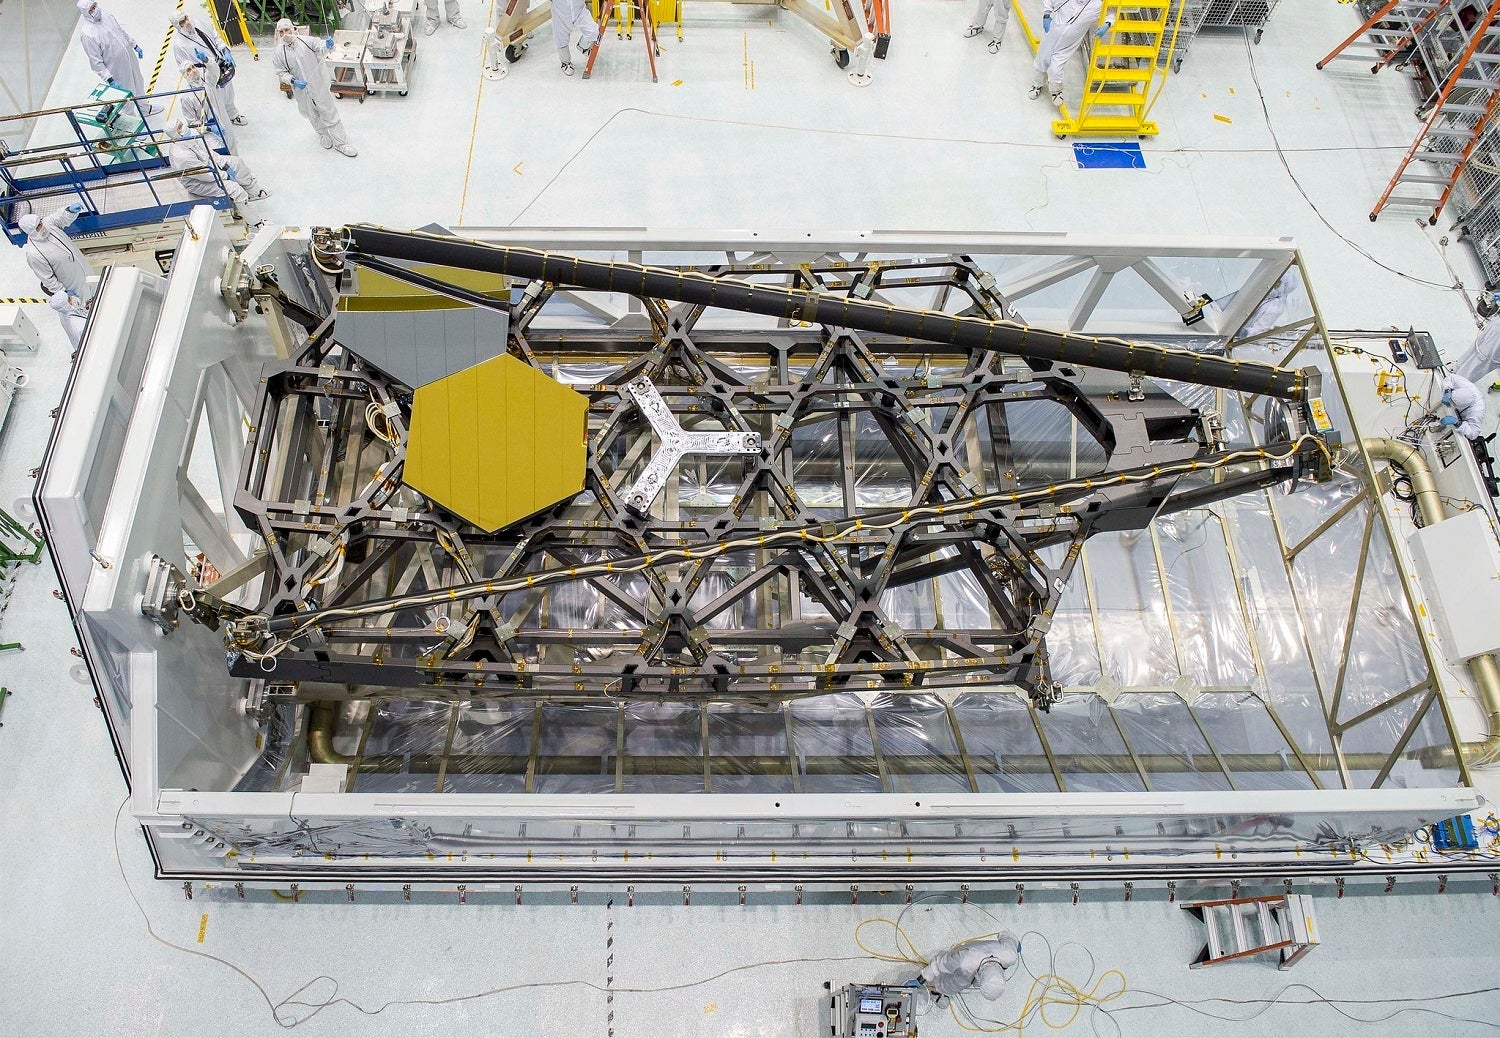 A birdâs-eye view of NASA Goddardâs cleanroom and the James Webb Space Telescopeâs test backplane and mirrors sitting in their packing case.